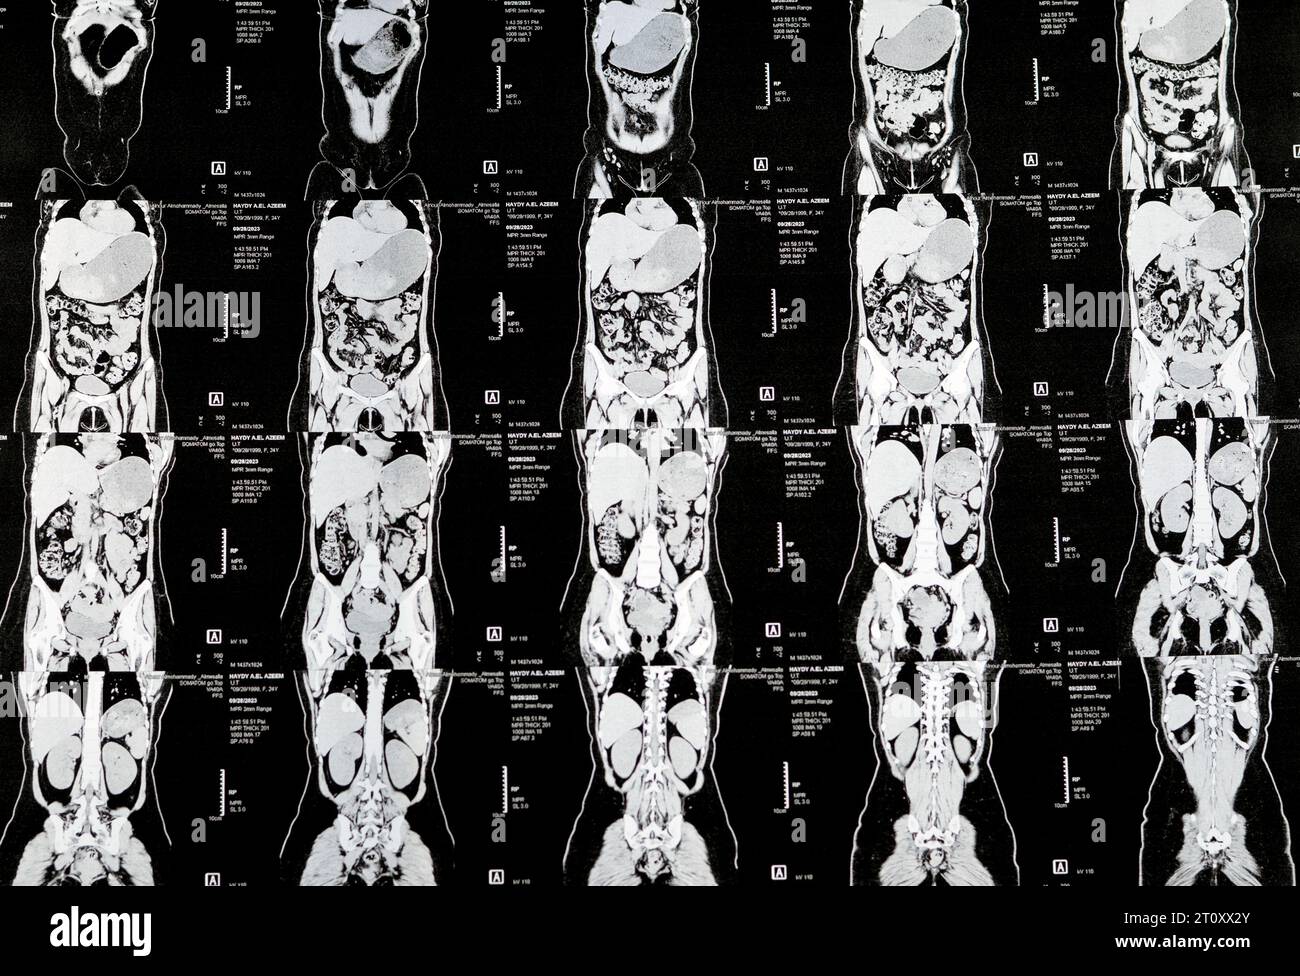 Cairo, Egitto, 3 ottobre 2023: La scansione TC multistrato dell'addome e della pelvi mostra cisti ovarica destra 3 x 3 cm, distensione gassosa del colon, nessuna urinaria di dimensioni notevoli Foto Stock